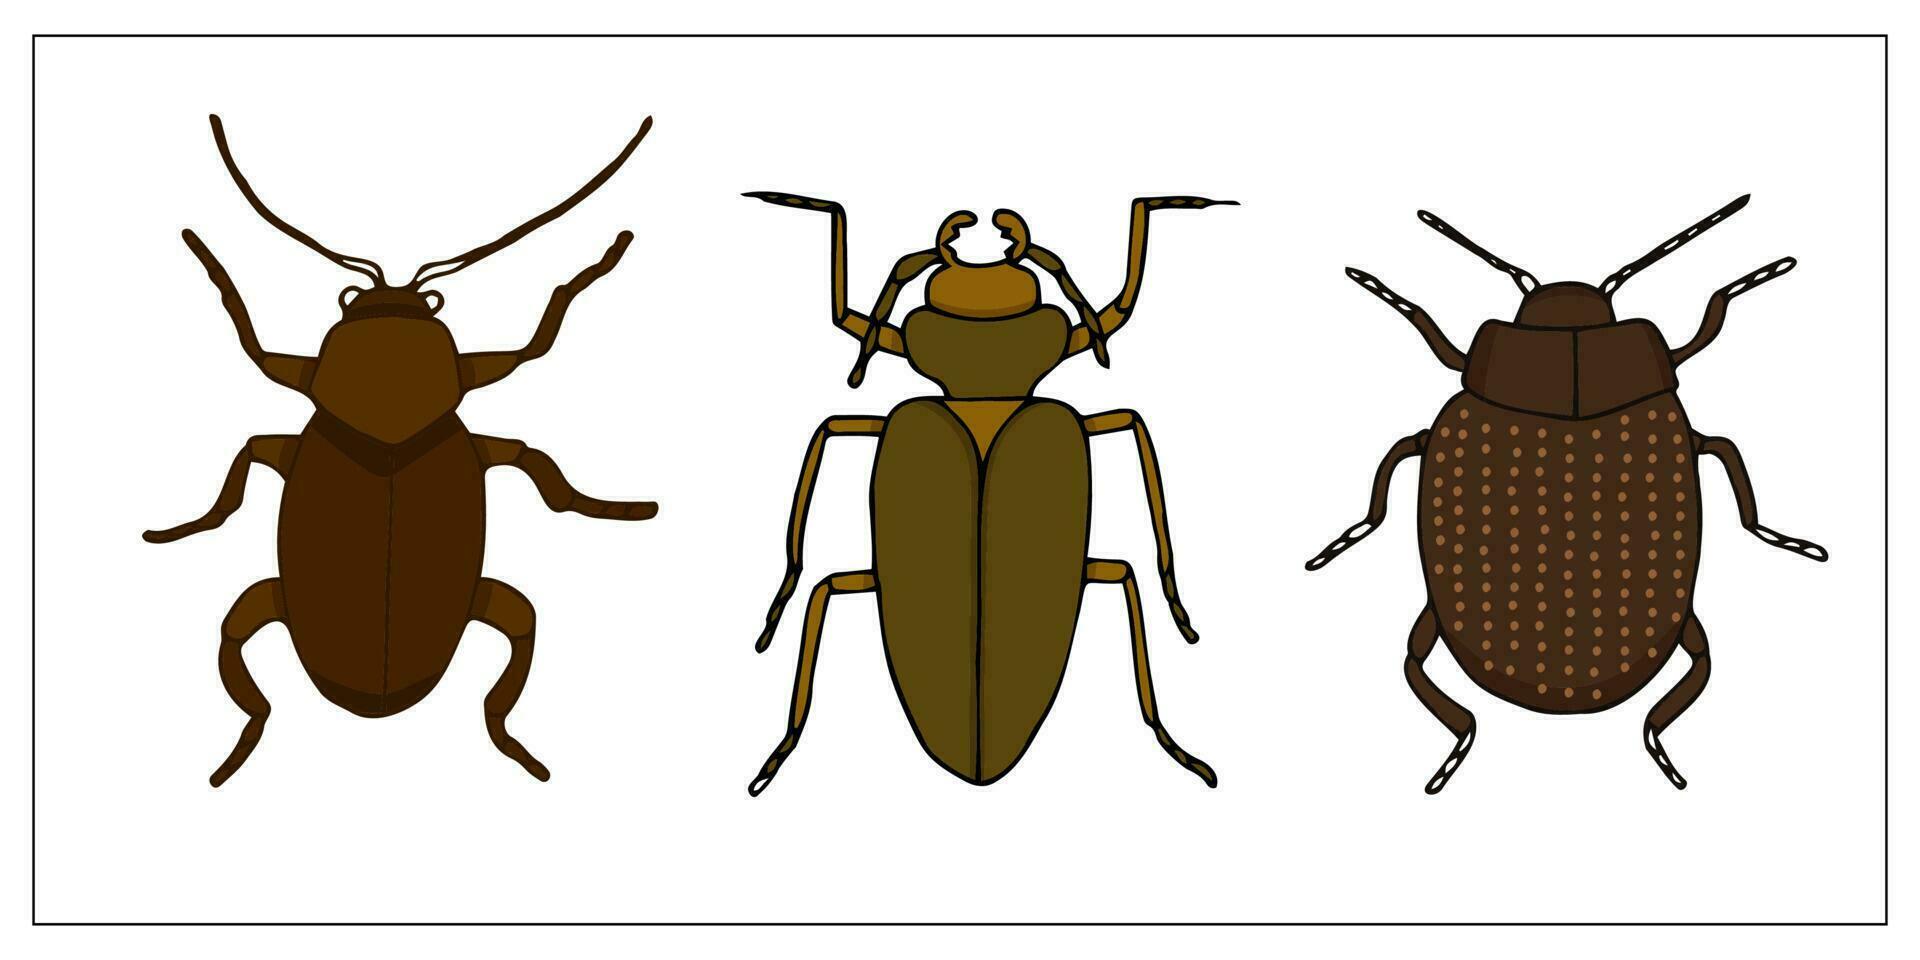 escarabajos y insectos. conjunto de dibujado a mano garabatear ilustración de insectos de miedo y realista insectos. helloween decoración. vector